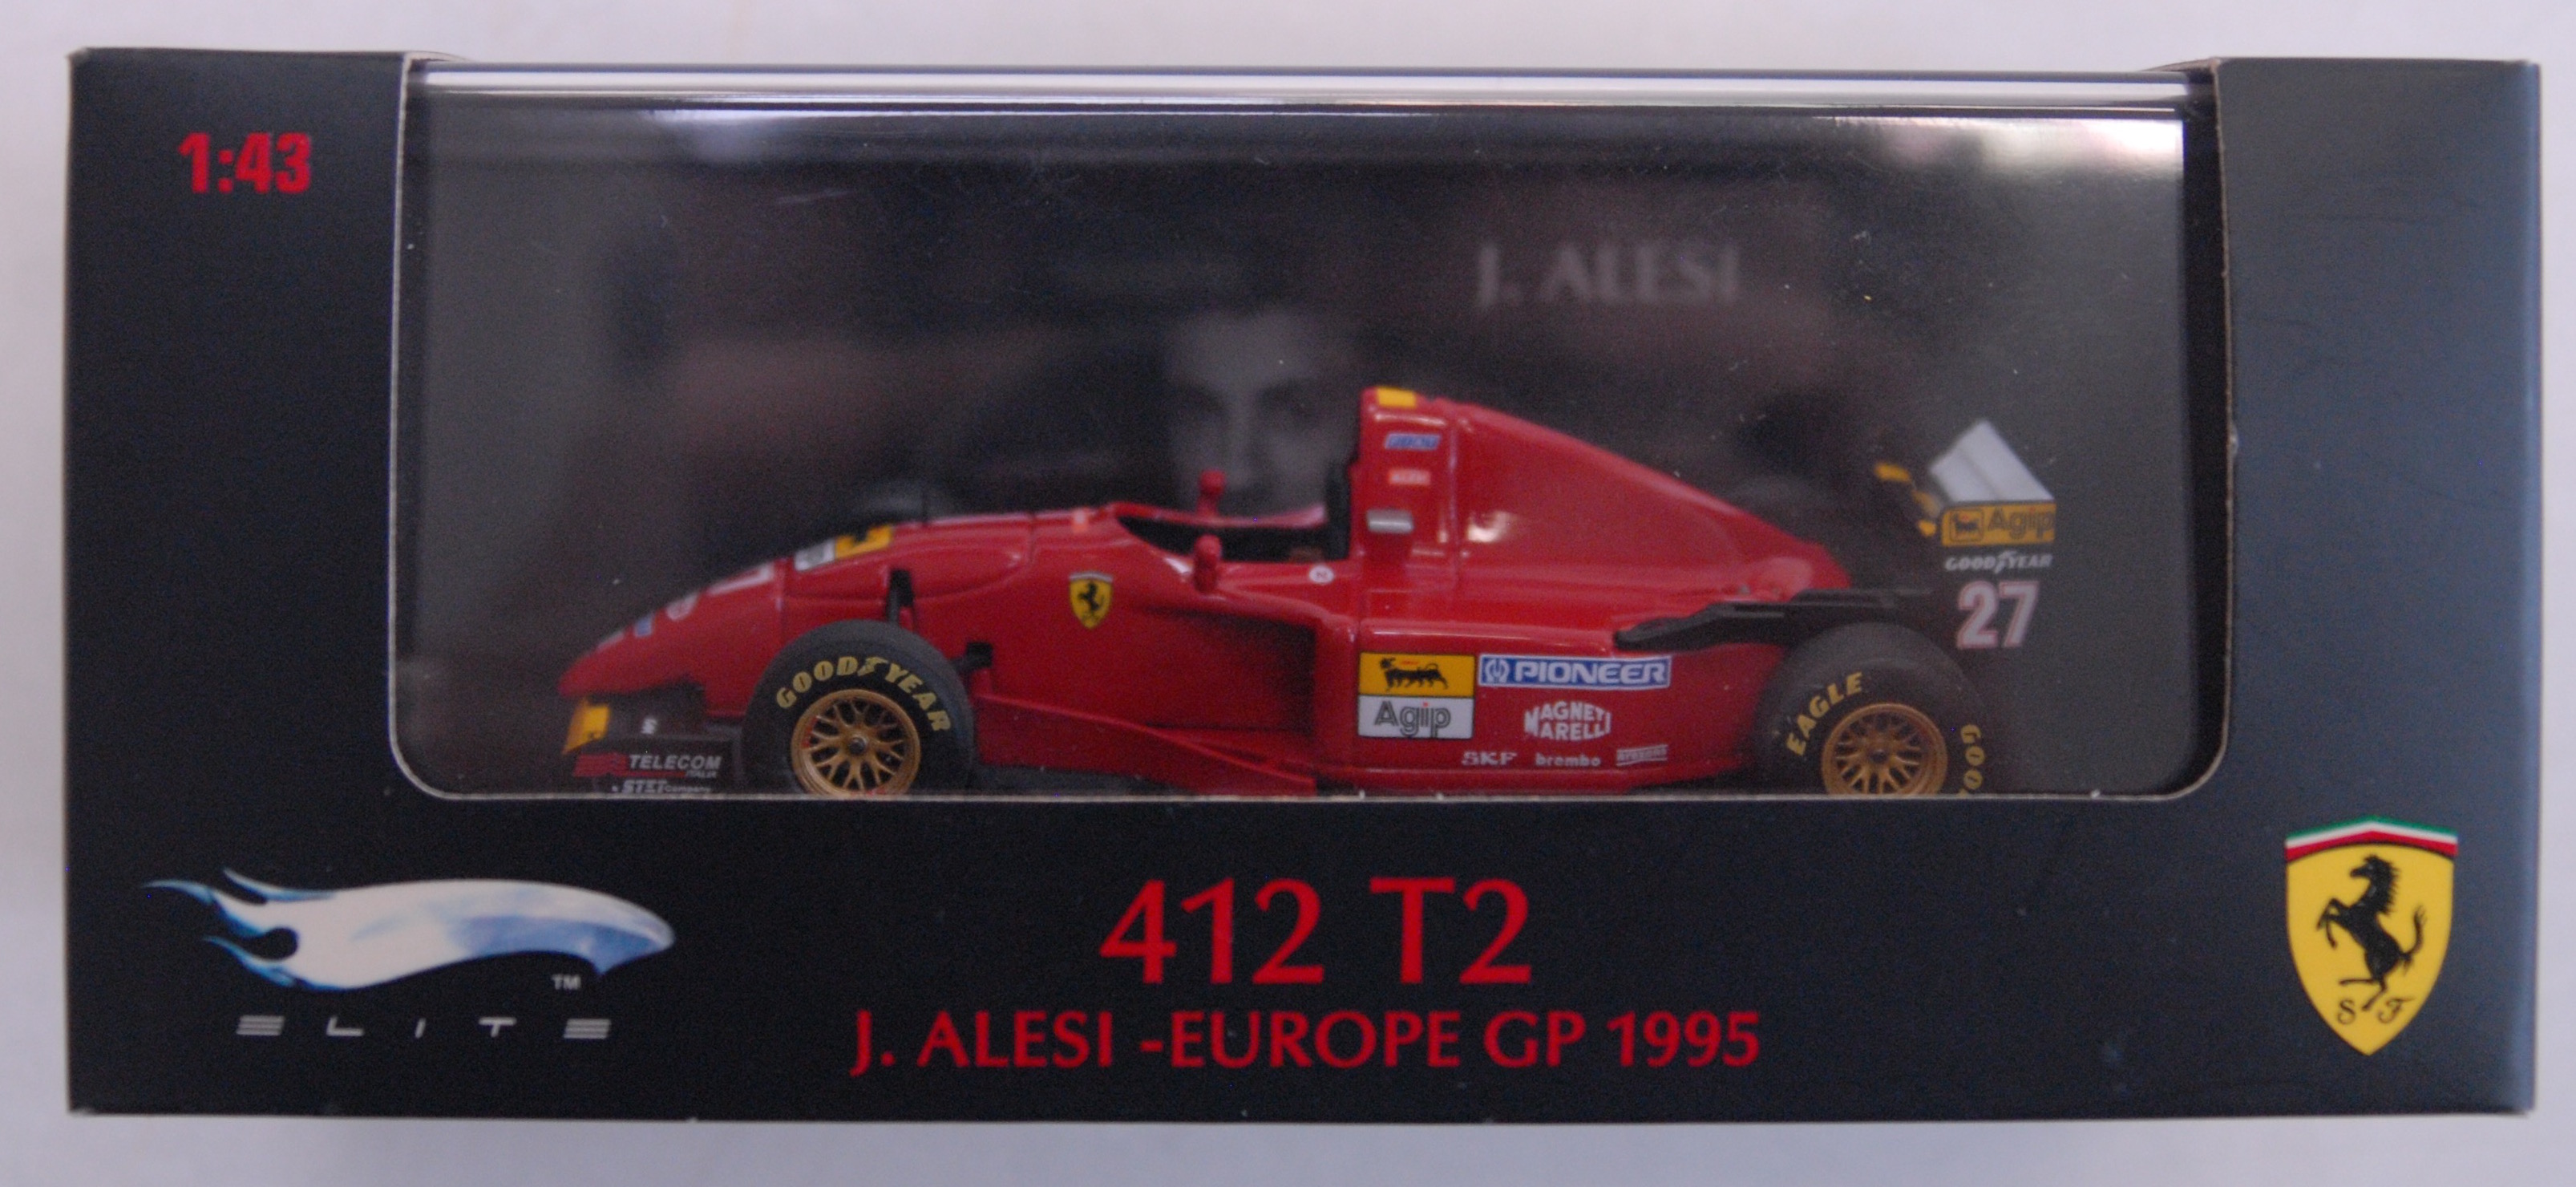 Ferrari 412 t2 - J.Alesi gp 1995